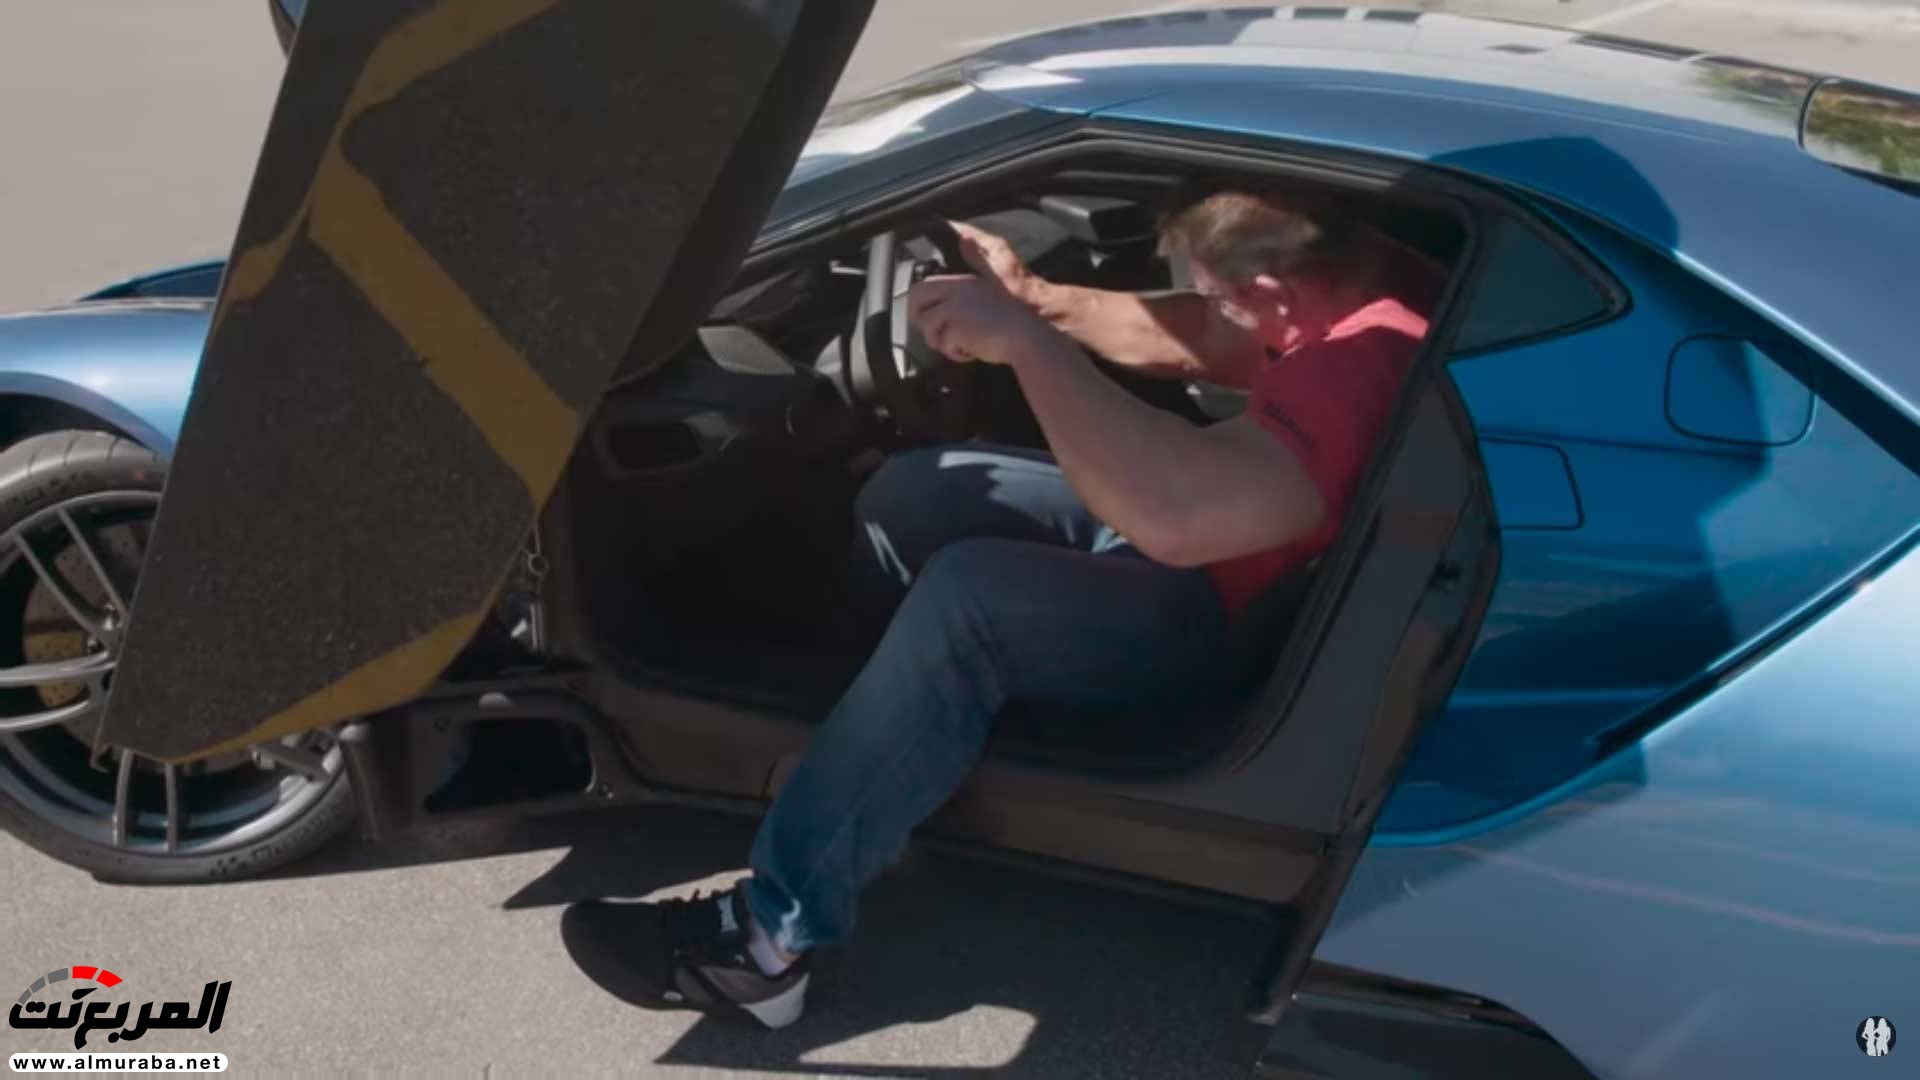 جون سينا يستعرض فورد GT 2017 "فيديو وصور" 21